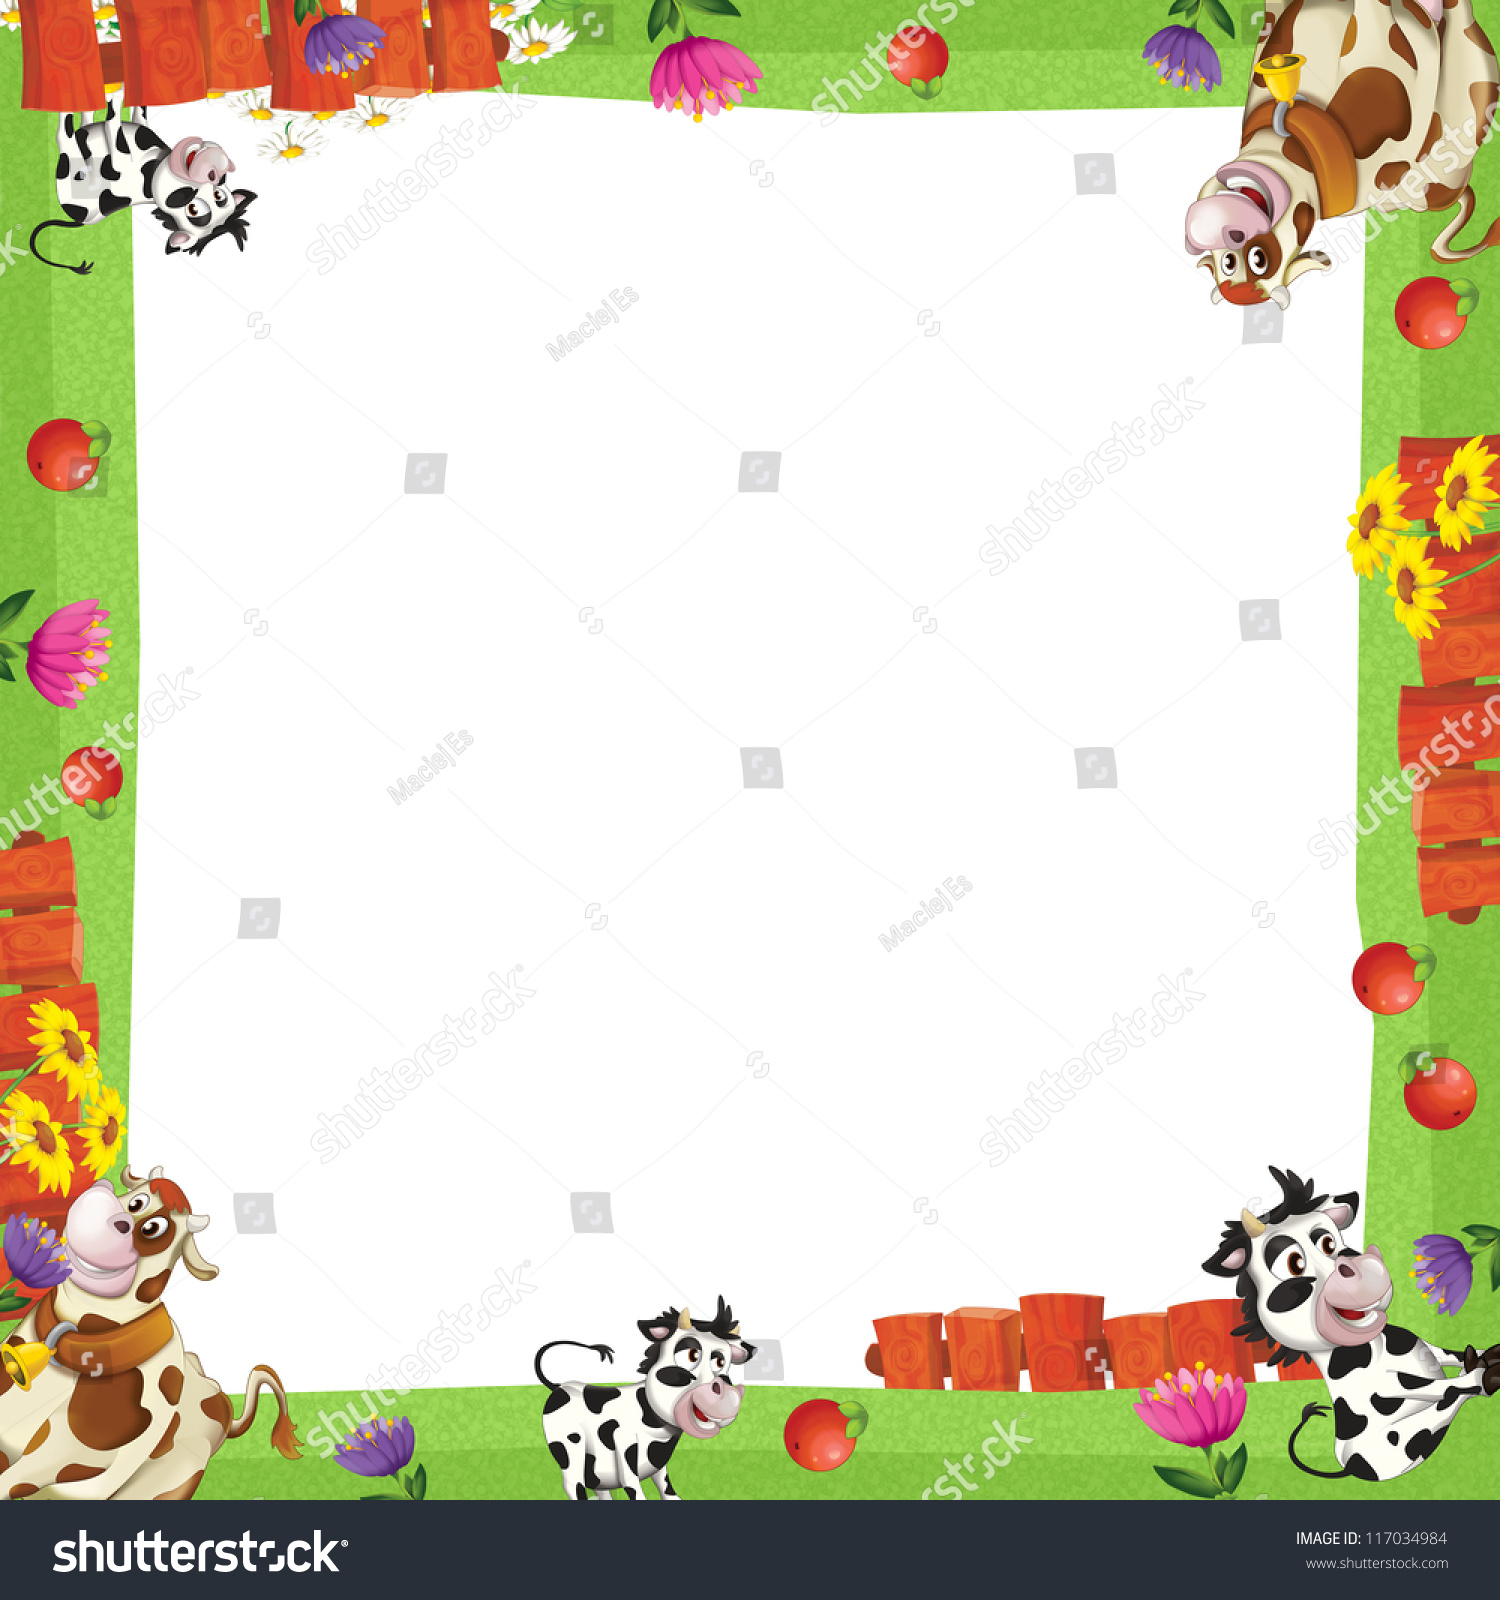 Cartoon Farm Frame - Illustration For The Children - 117034984 ...